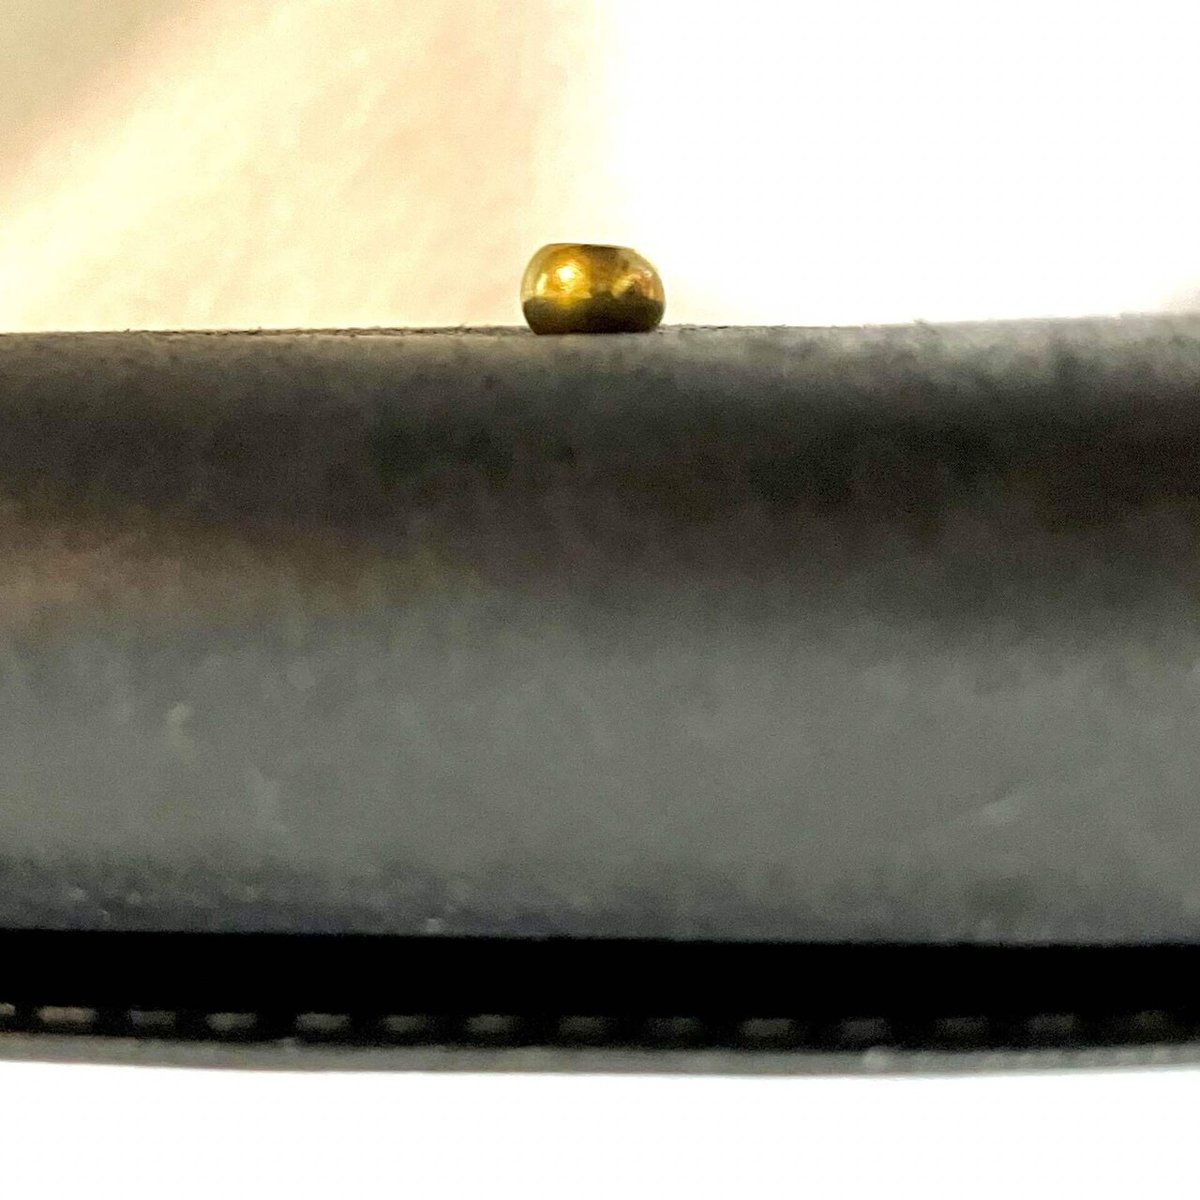 長財布についたホックを真横から見たところ。横幅の半分くらいの厚みがあることがわかる。